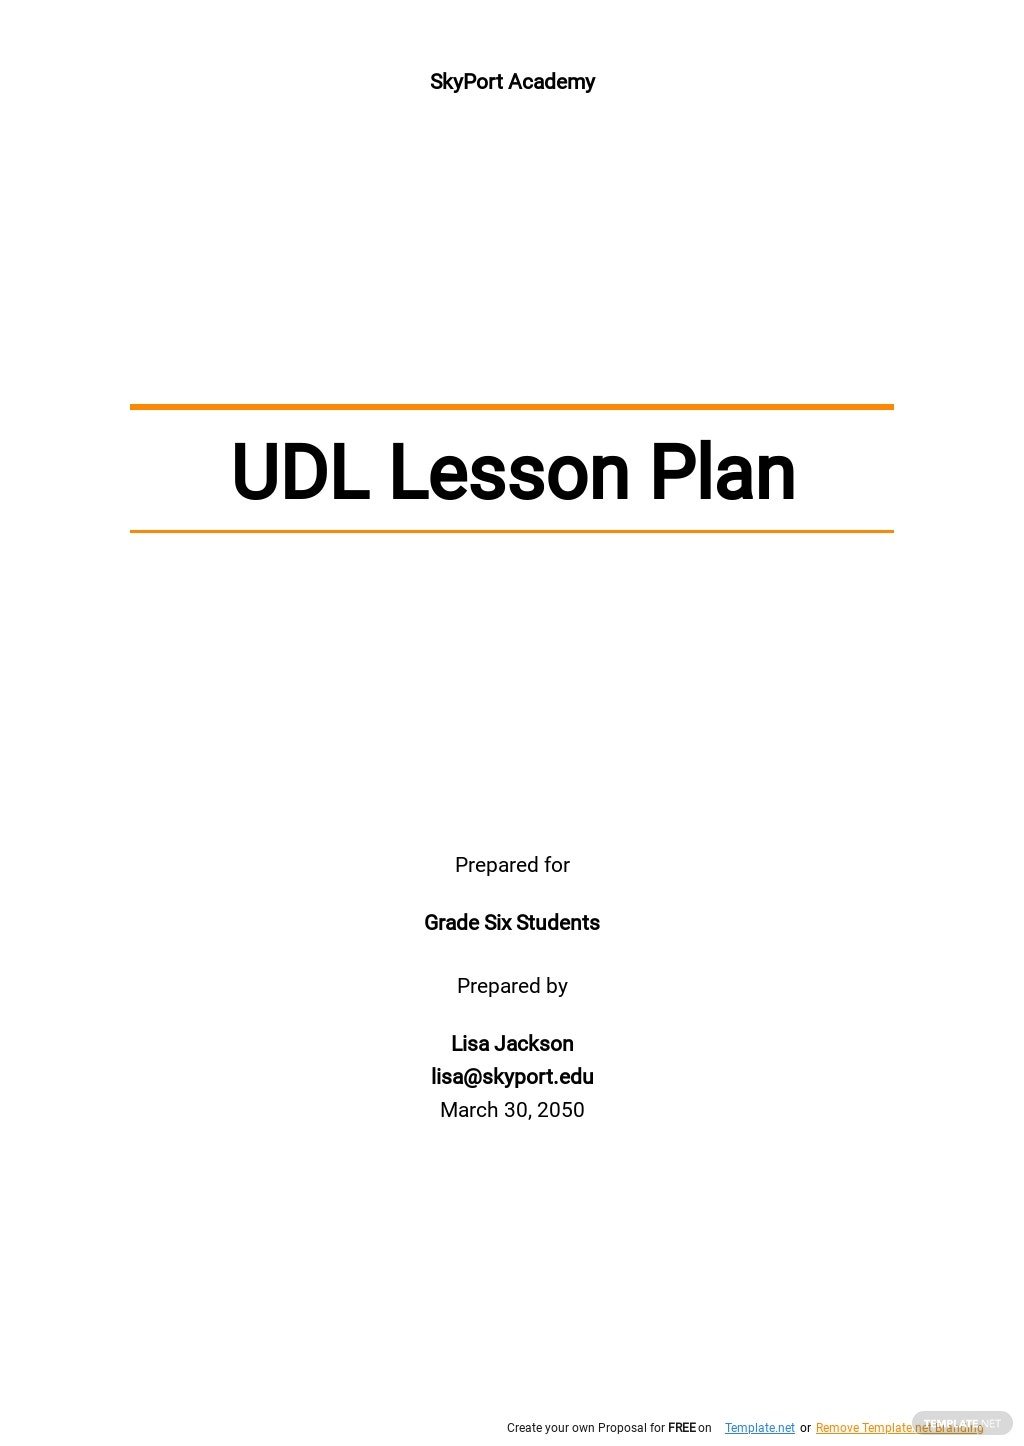 udl lesson plan template